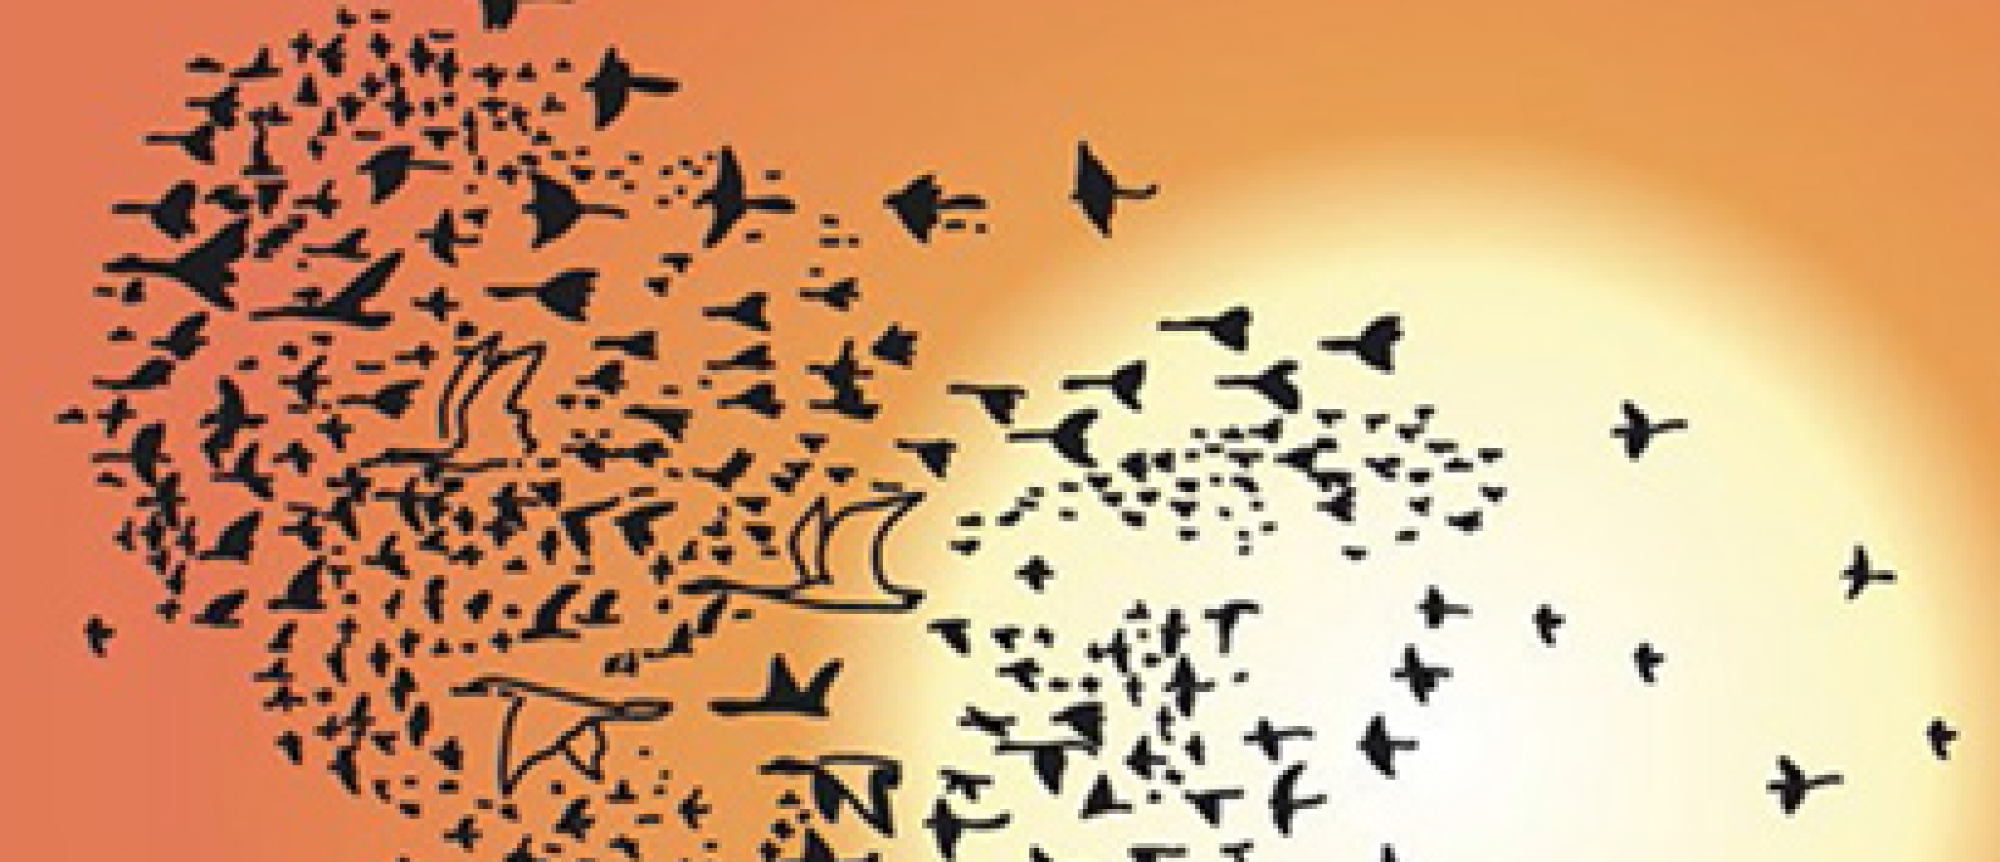 Presentatie van Dirk Kroon Op de hoogte van de vogels - Verzamelde gedichten